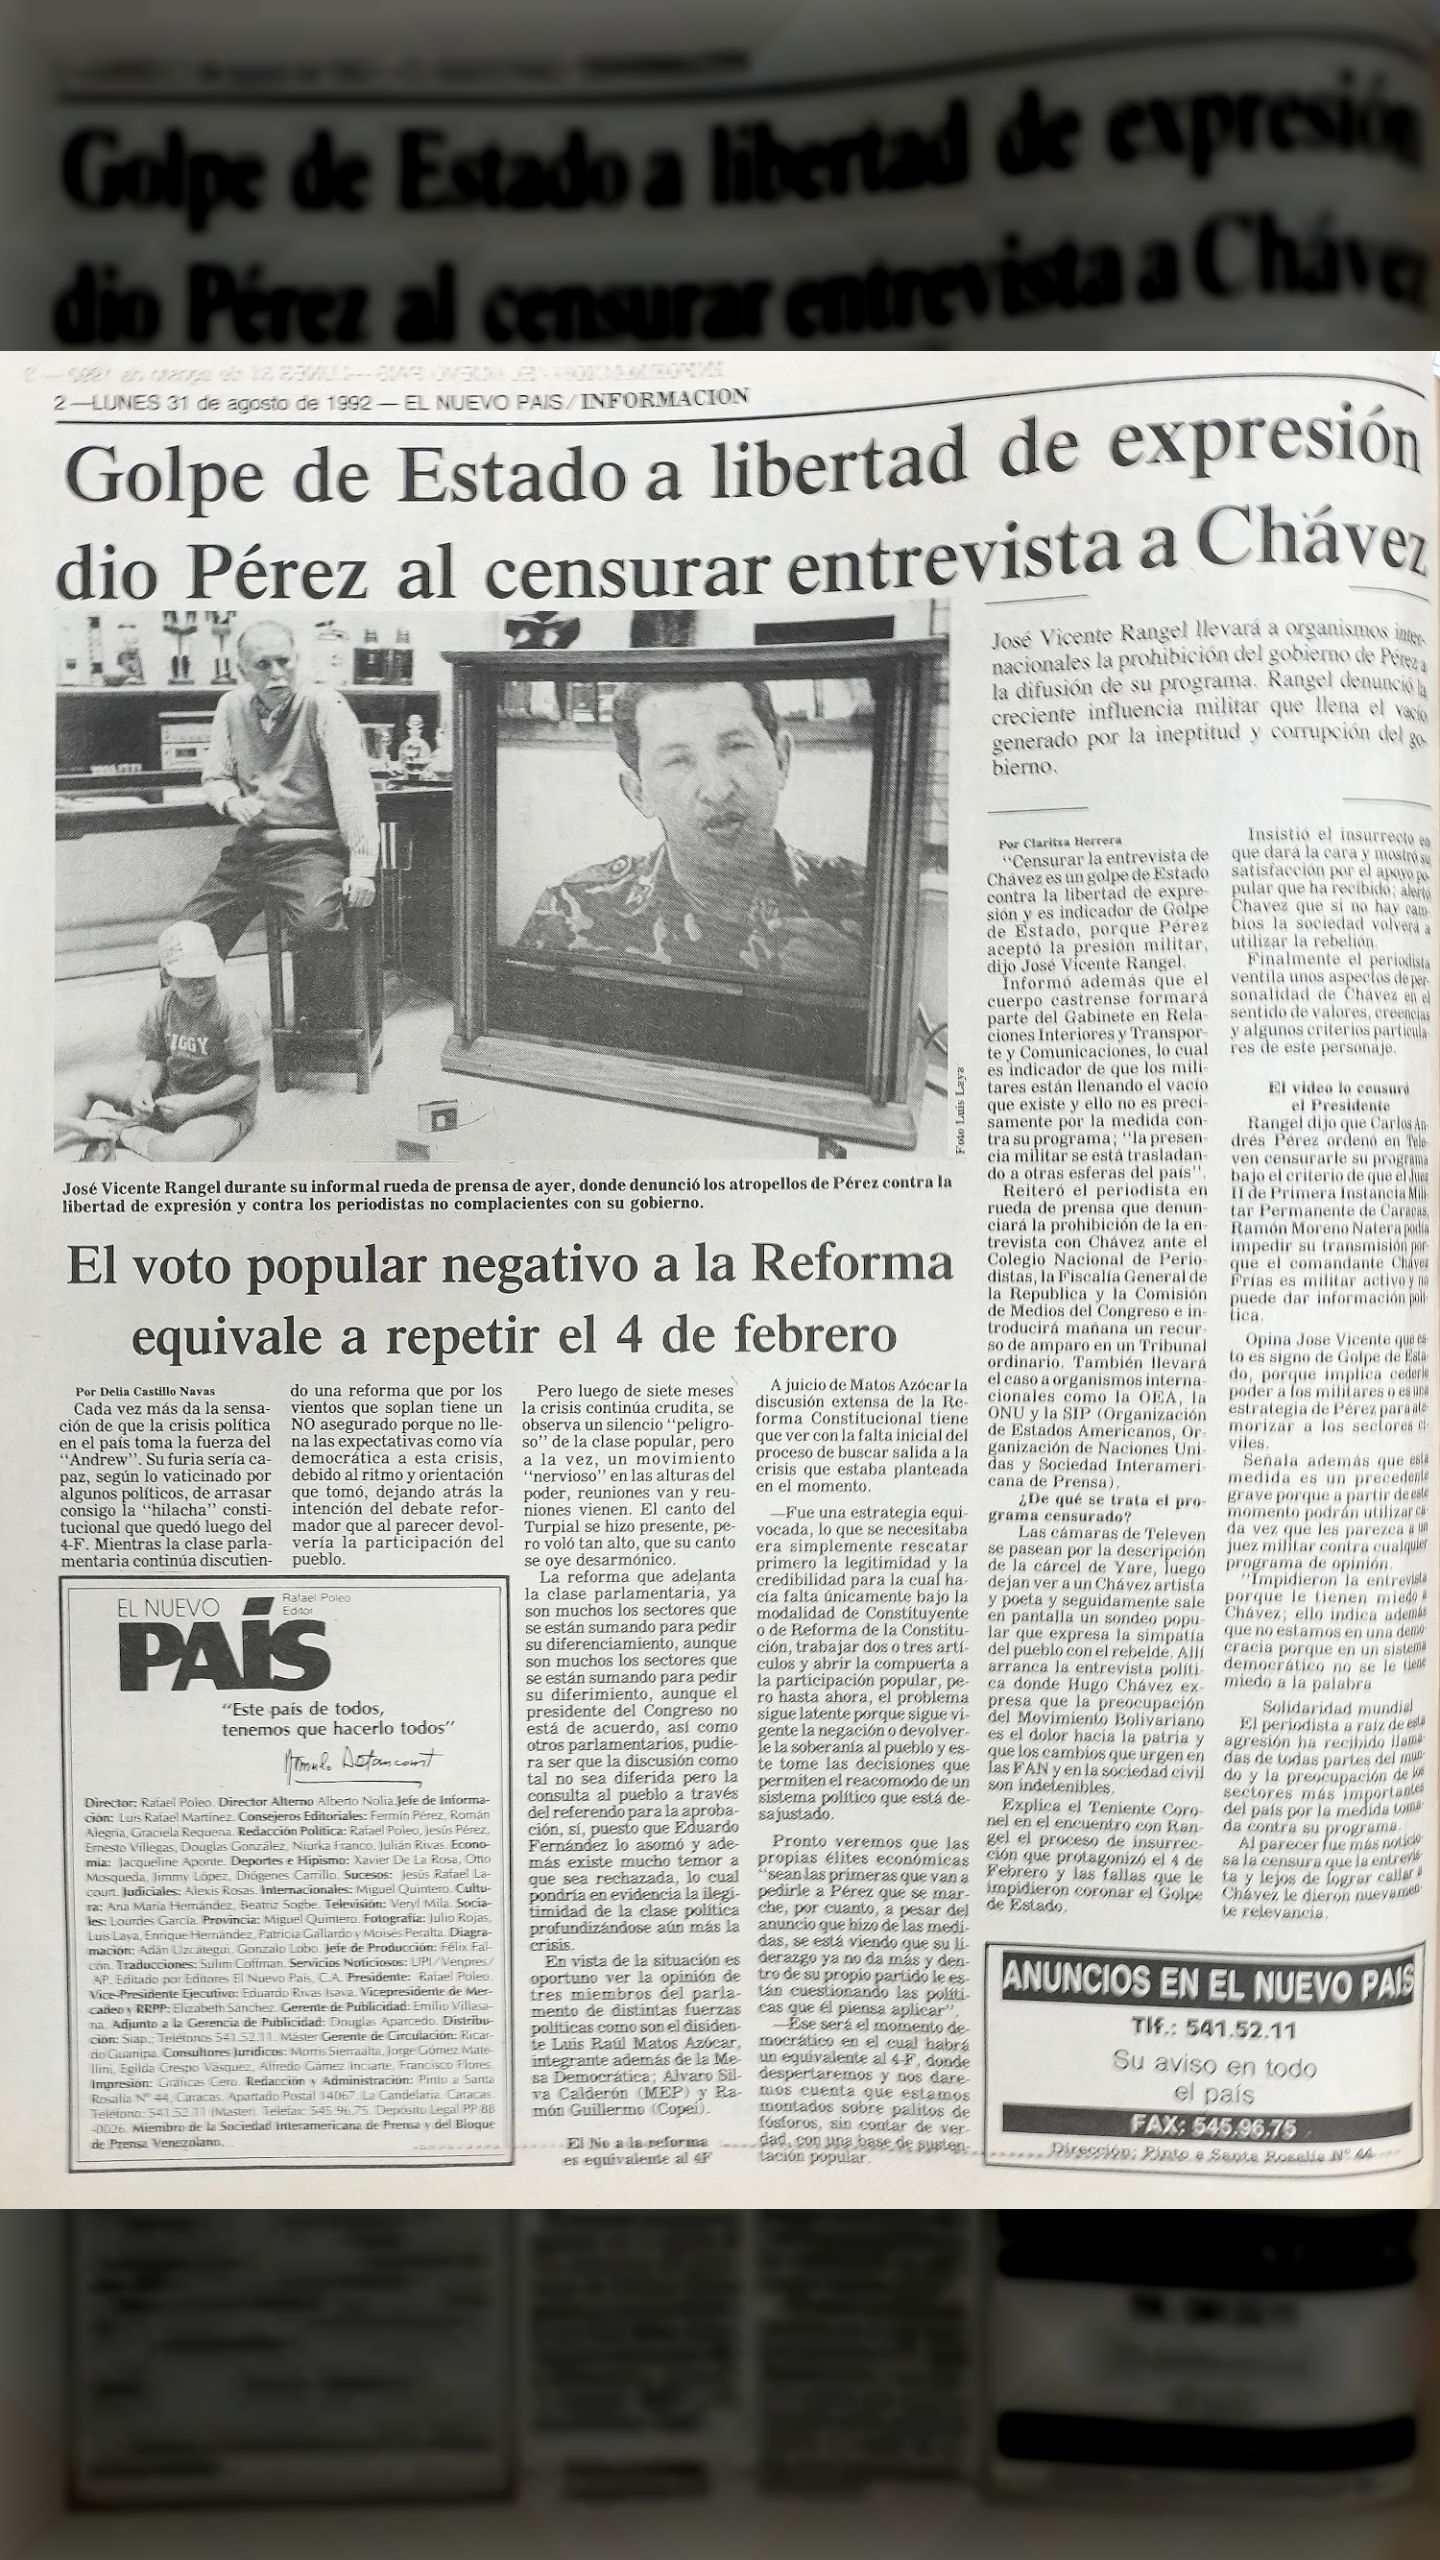 El Gran Dictador - Golpe de Estado a la libertad de expresión (El Nuevo País, 31 de agosto 1992)